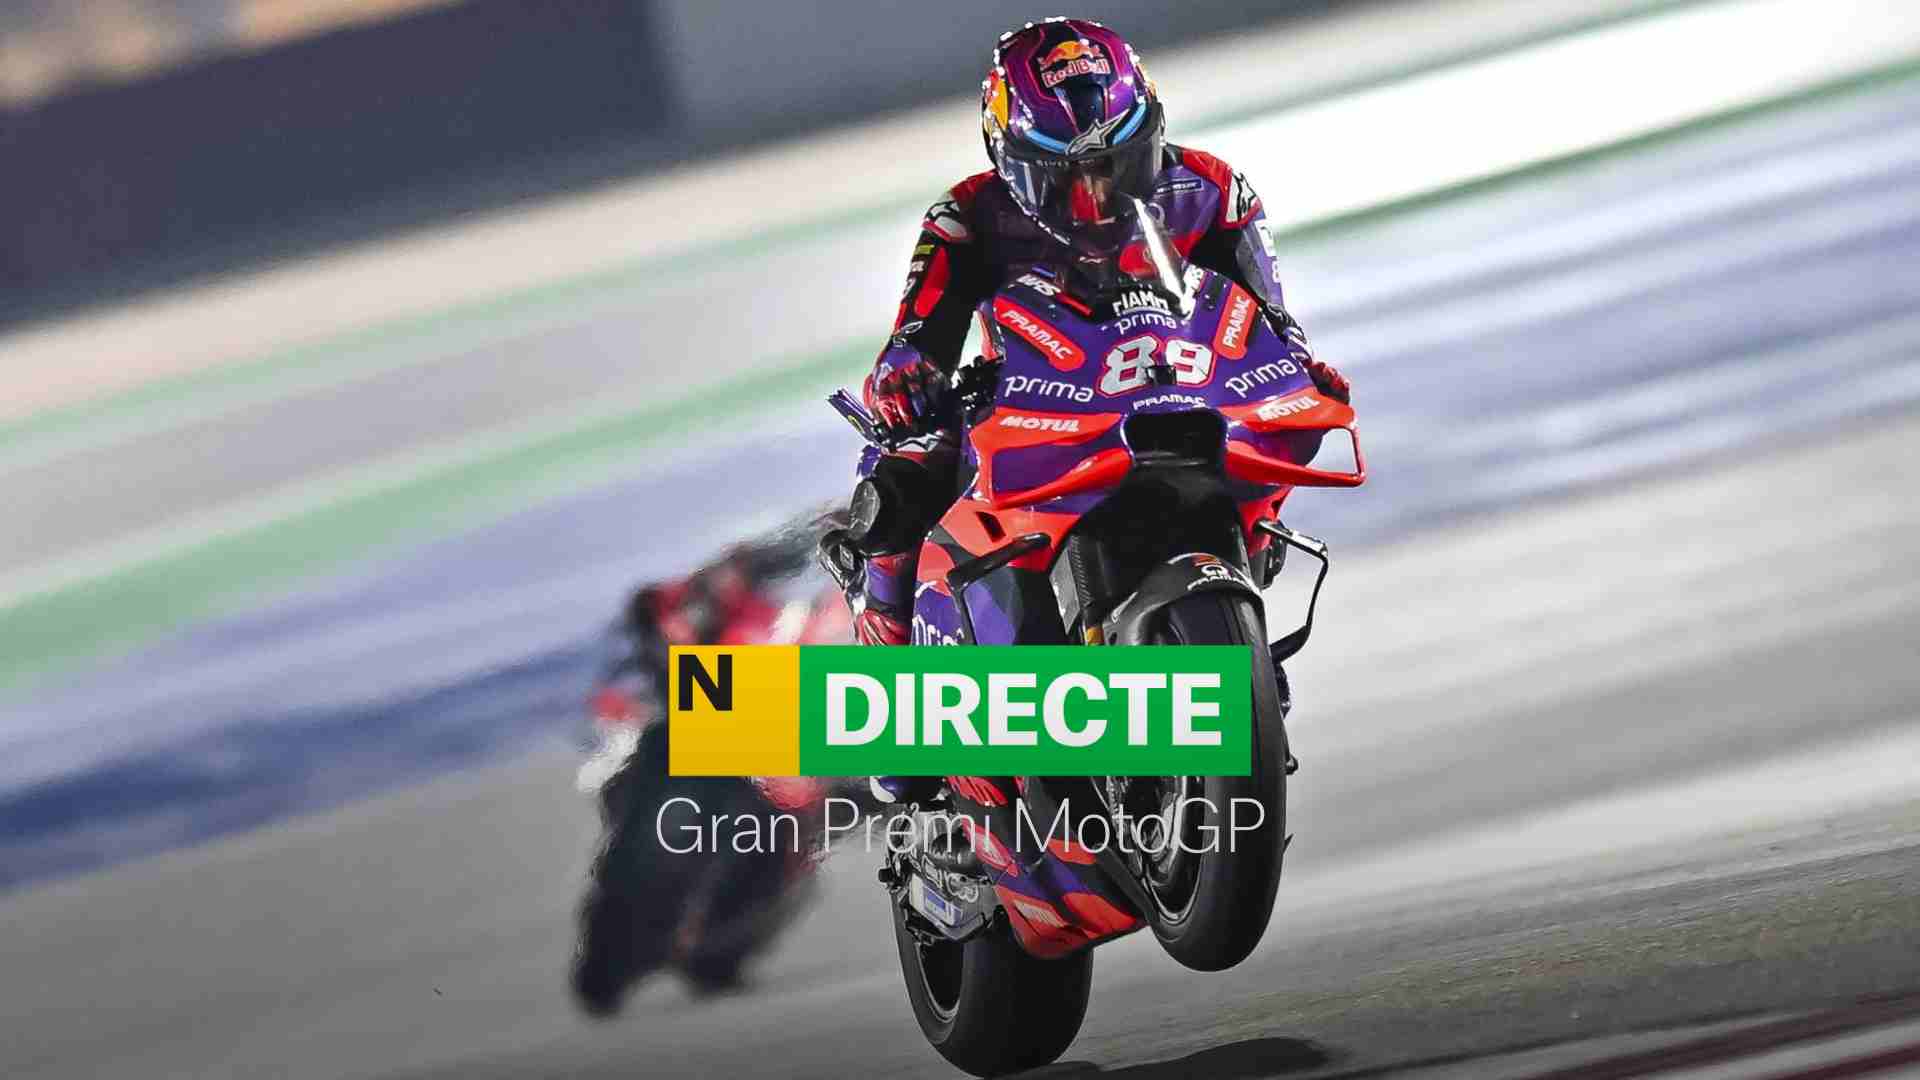 Gran Premio de MotoGP en COTA, DIRECTO | Resultado y resumen